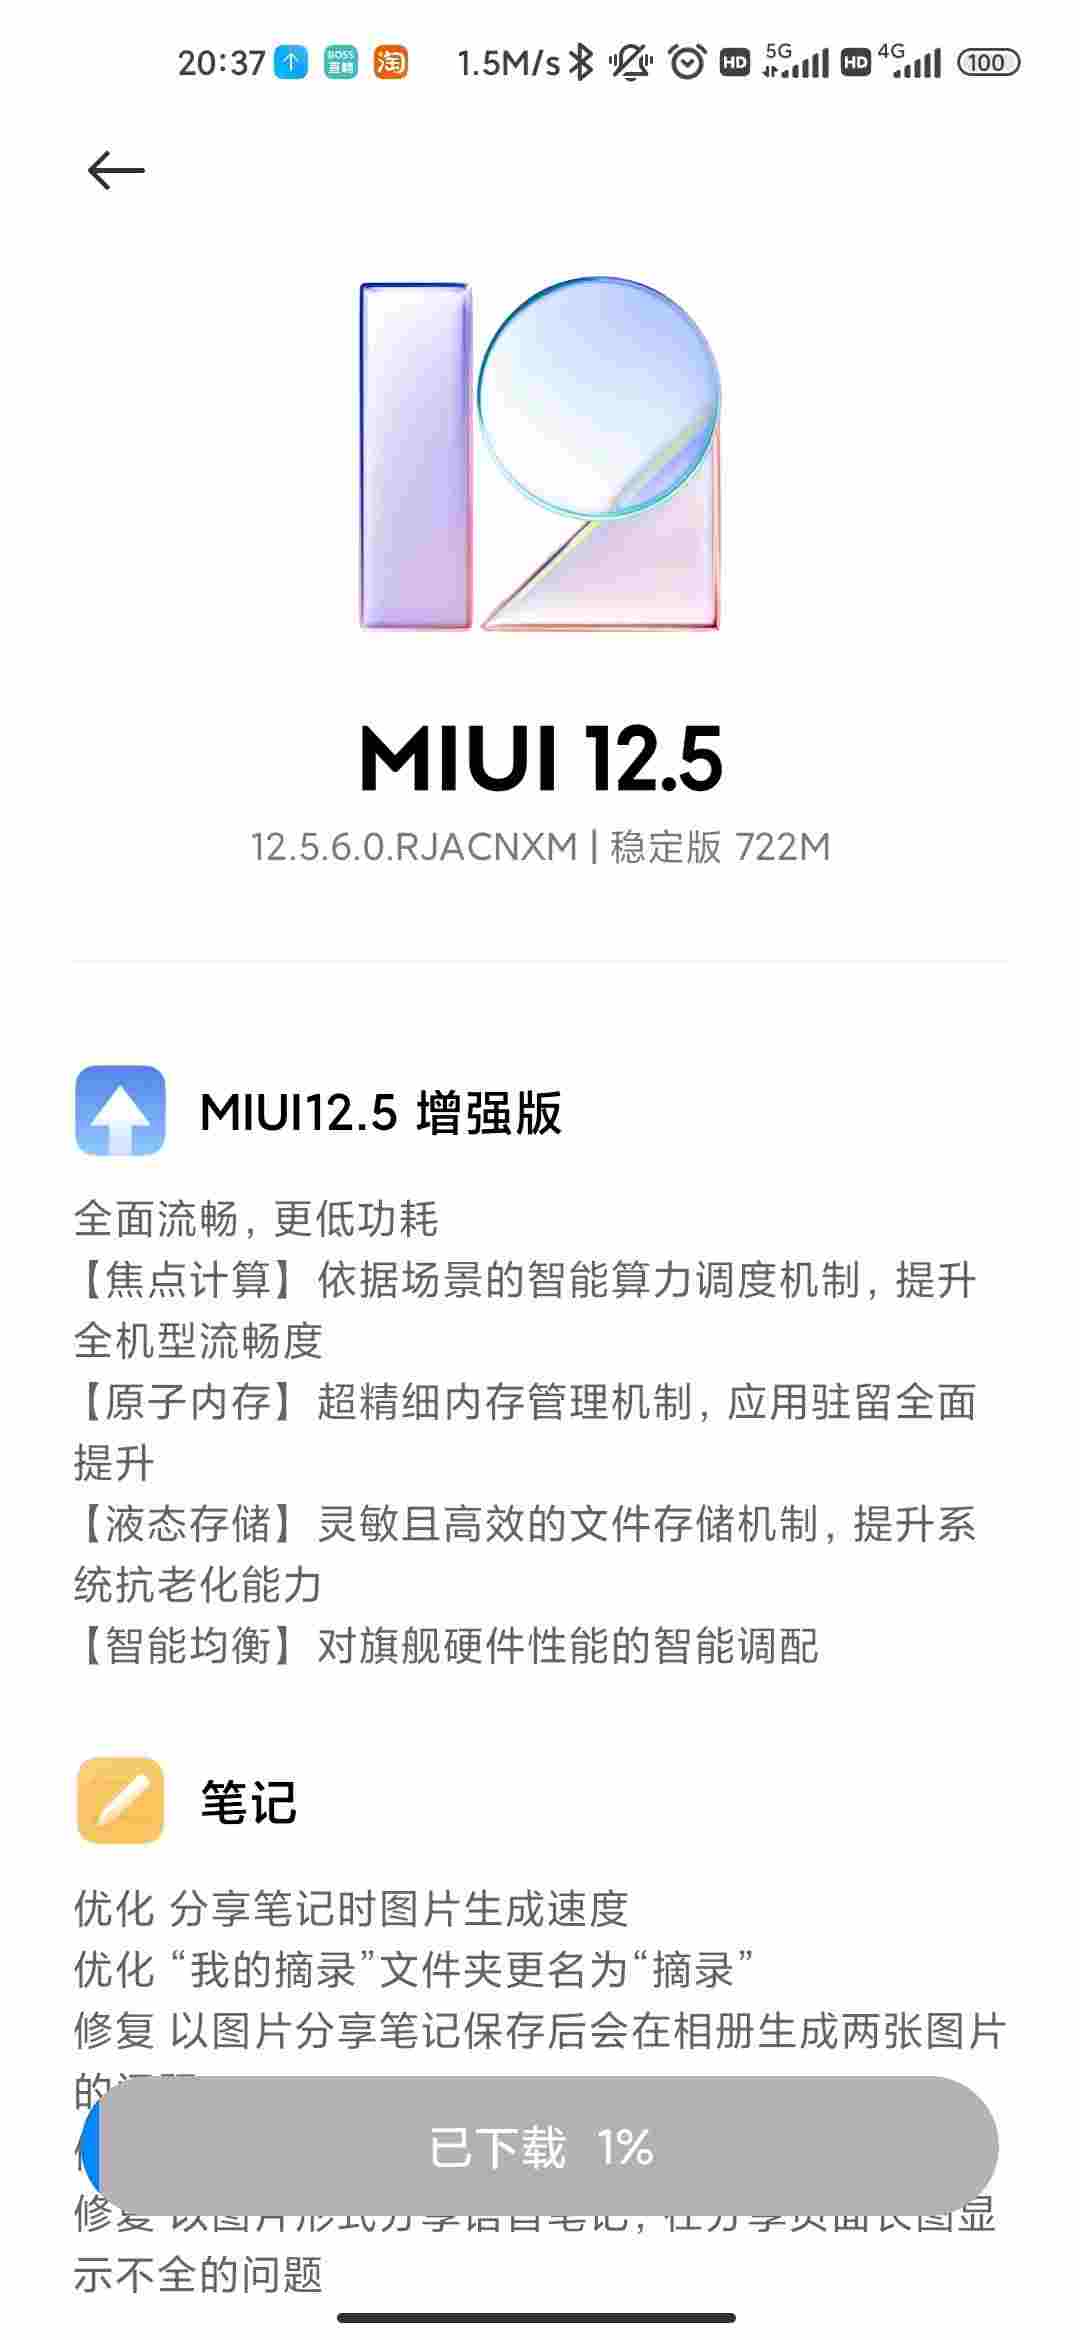 Xiaomi Mi 10 Pro MIUI 12.5 enhanced edition